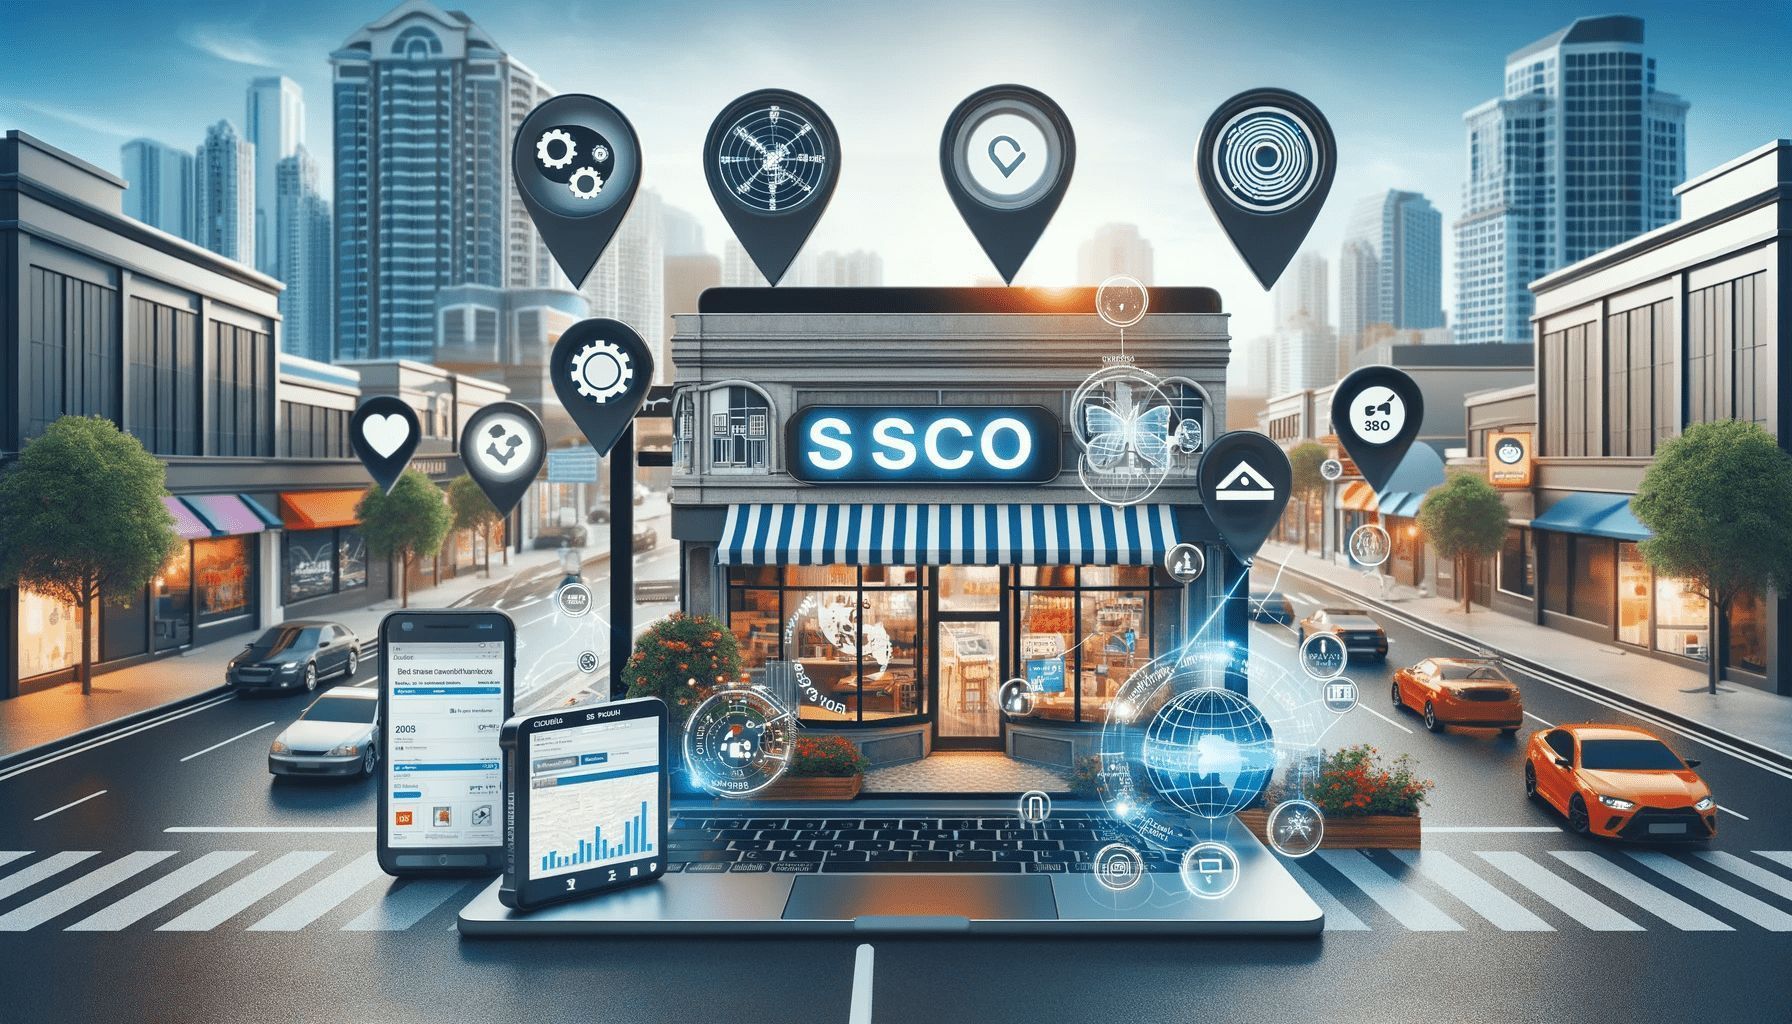 sco,what is sco,sco in marketing